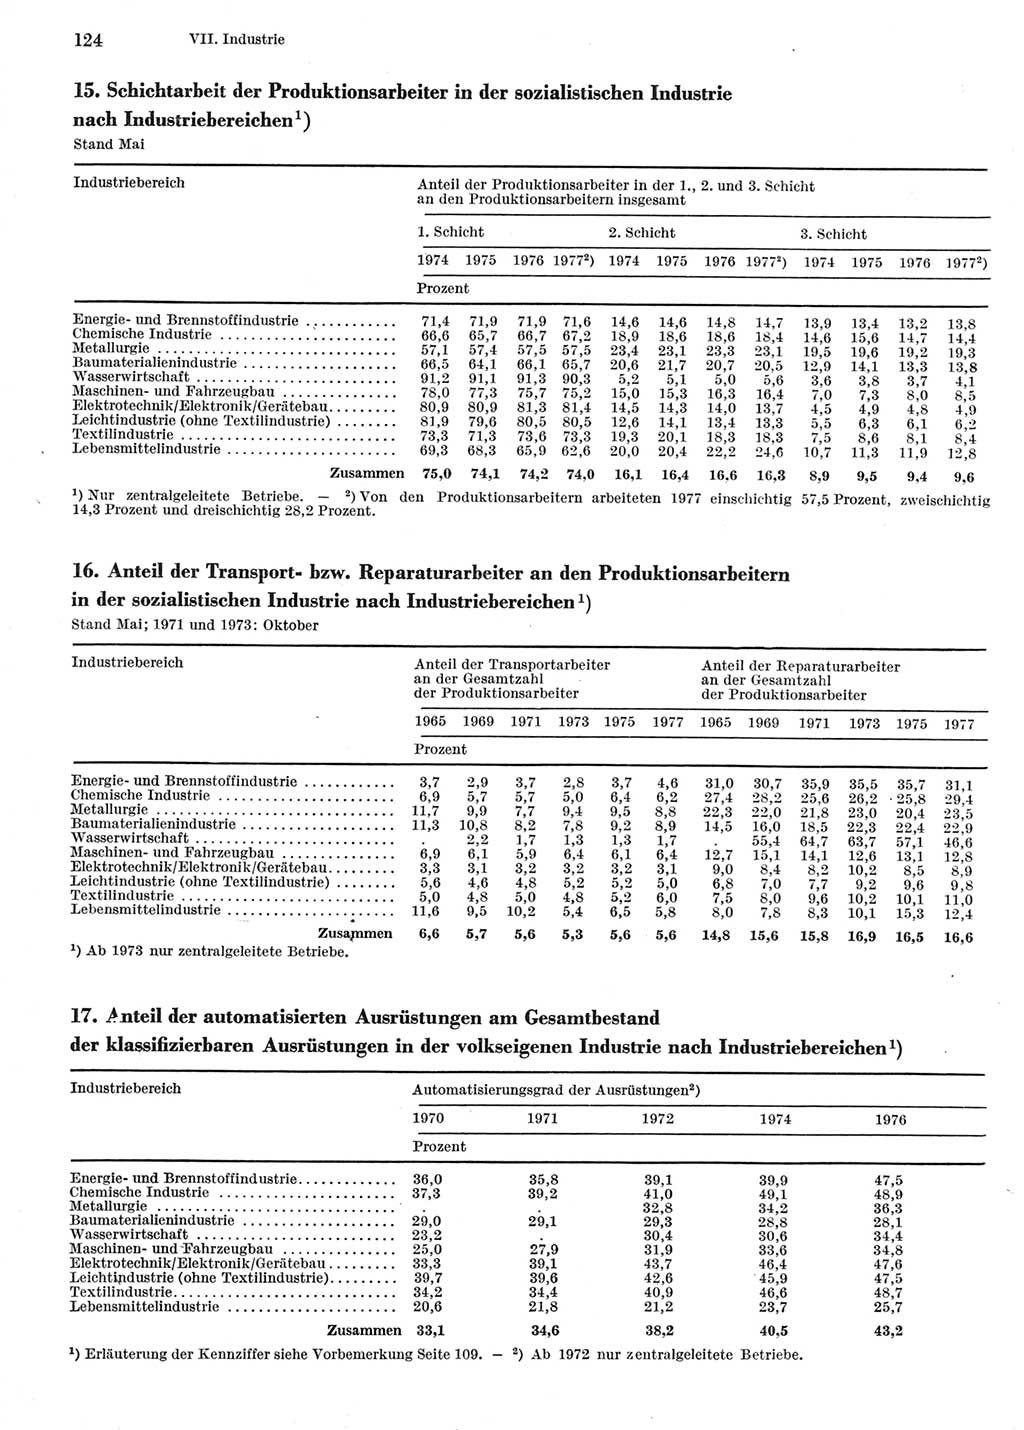 Statistisches Jahrbuch der Deutschen Demokratischen Republik (DDR) 1978, Seite 124 (Stat. Jb. DDR 1978, S. 124)